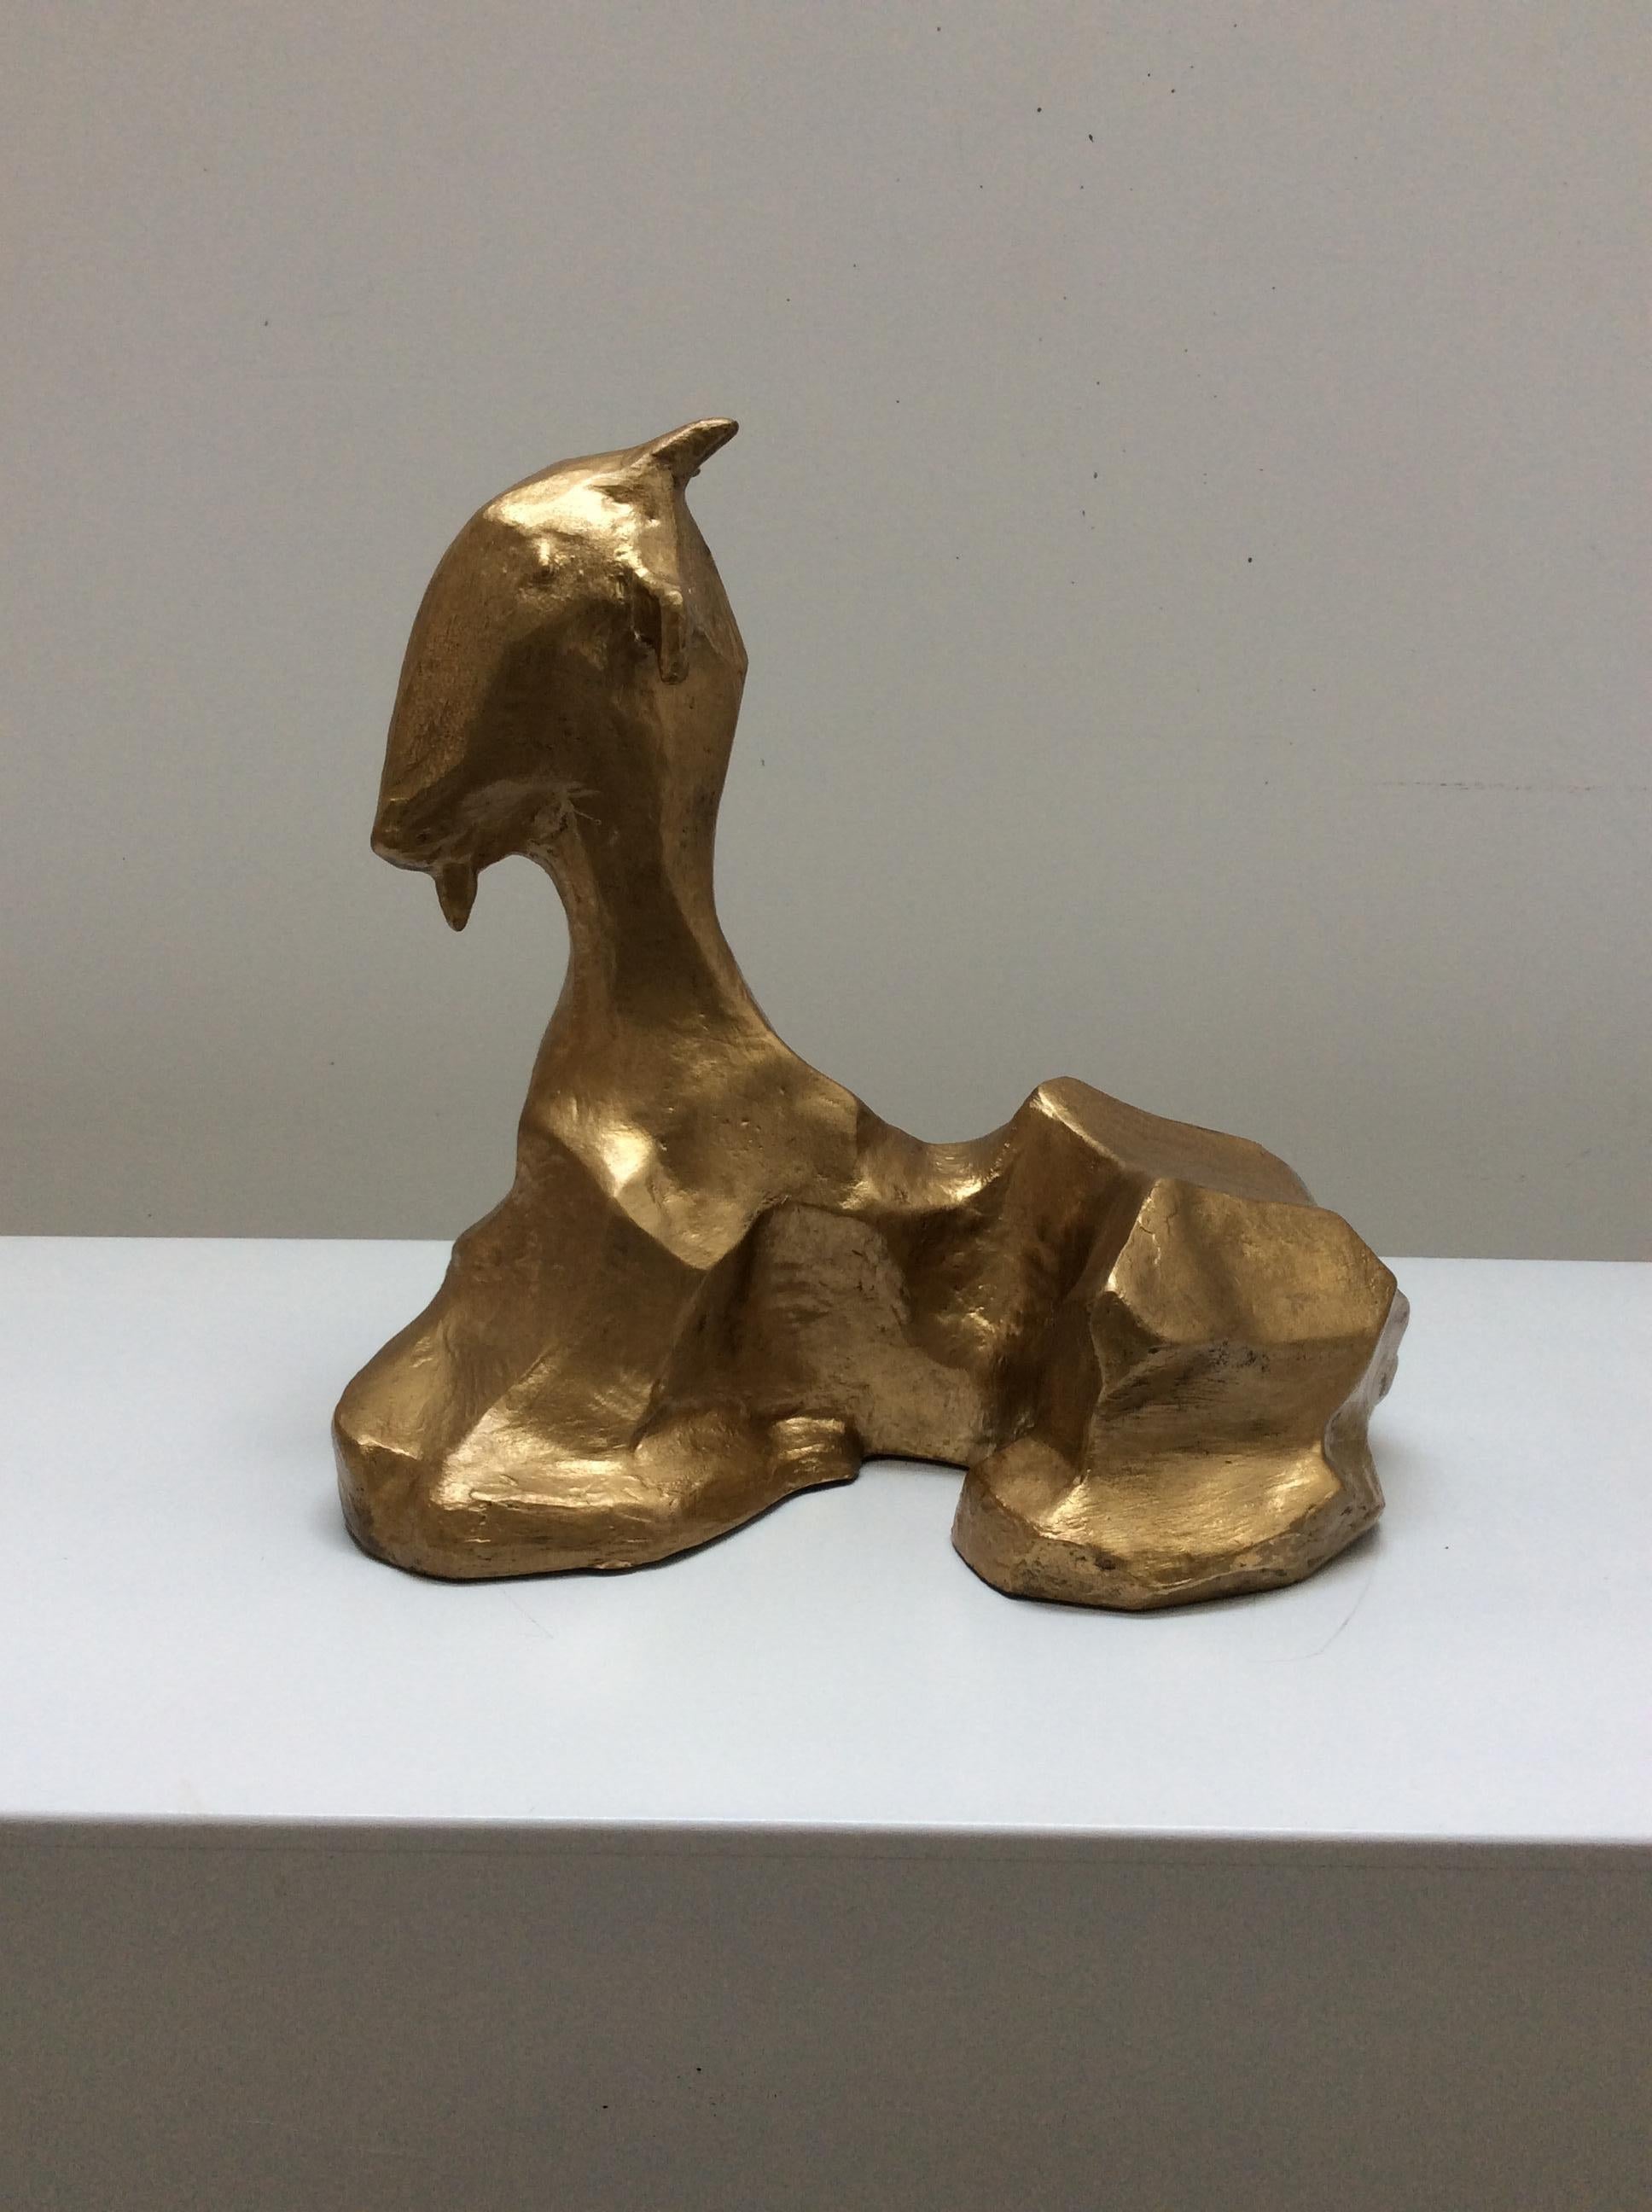 Sculpture en bronze 'Goat' créée par le Studio Design/One, moulée et coulée en bronze selon le procédé de la cire perdue. La sculpture est disponible sur commande dans d'autres patines et en finition dorée.
Edition limitée
Disponible dès maintenant
